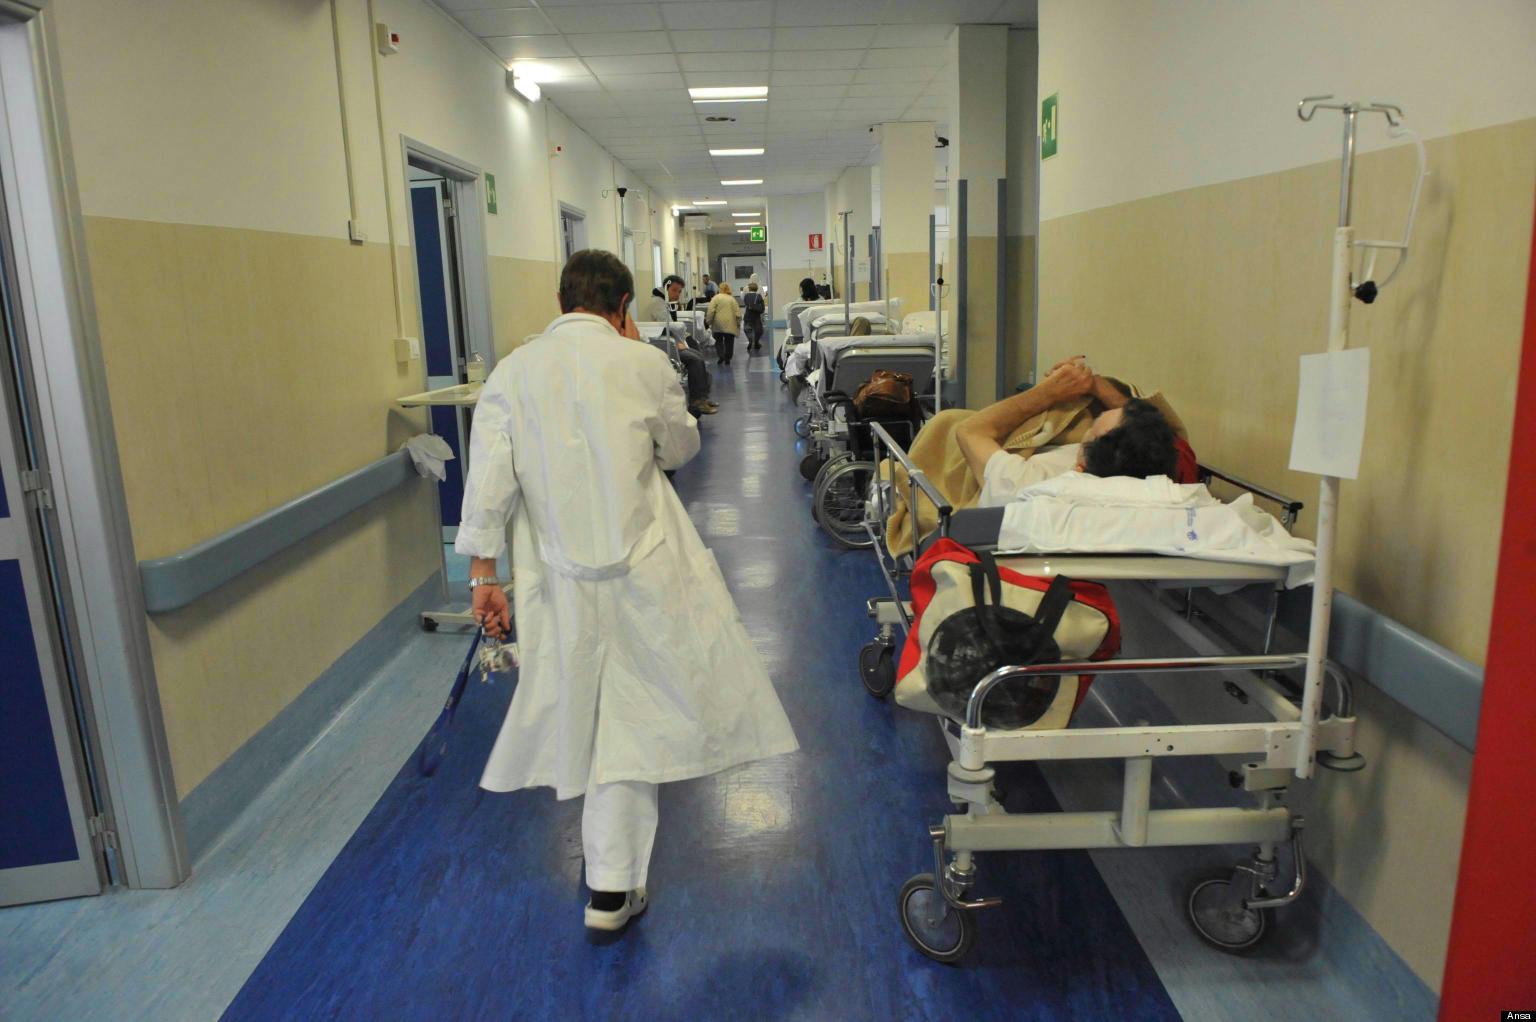 Dottore camminando nel corridoio di un ospedale. Sanità